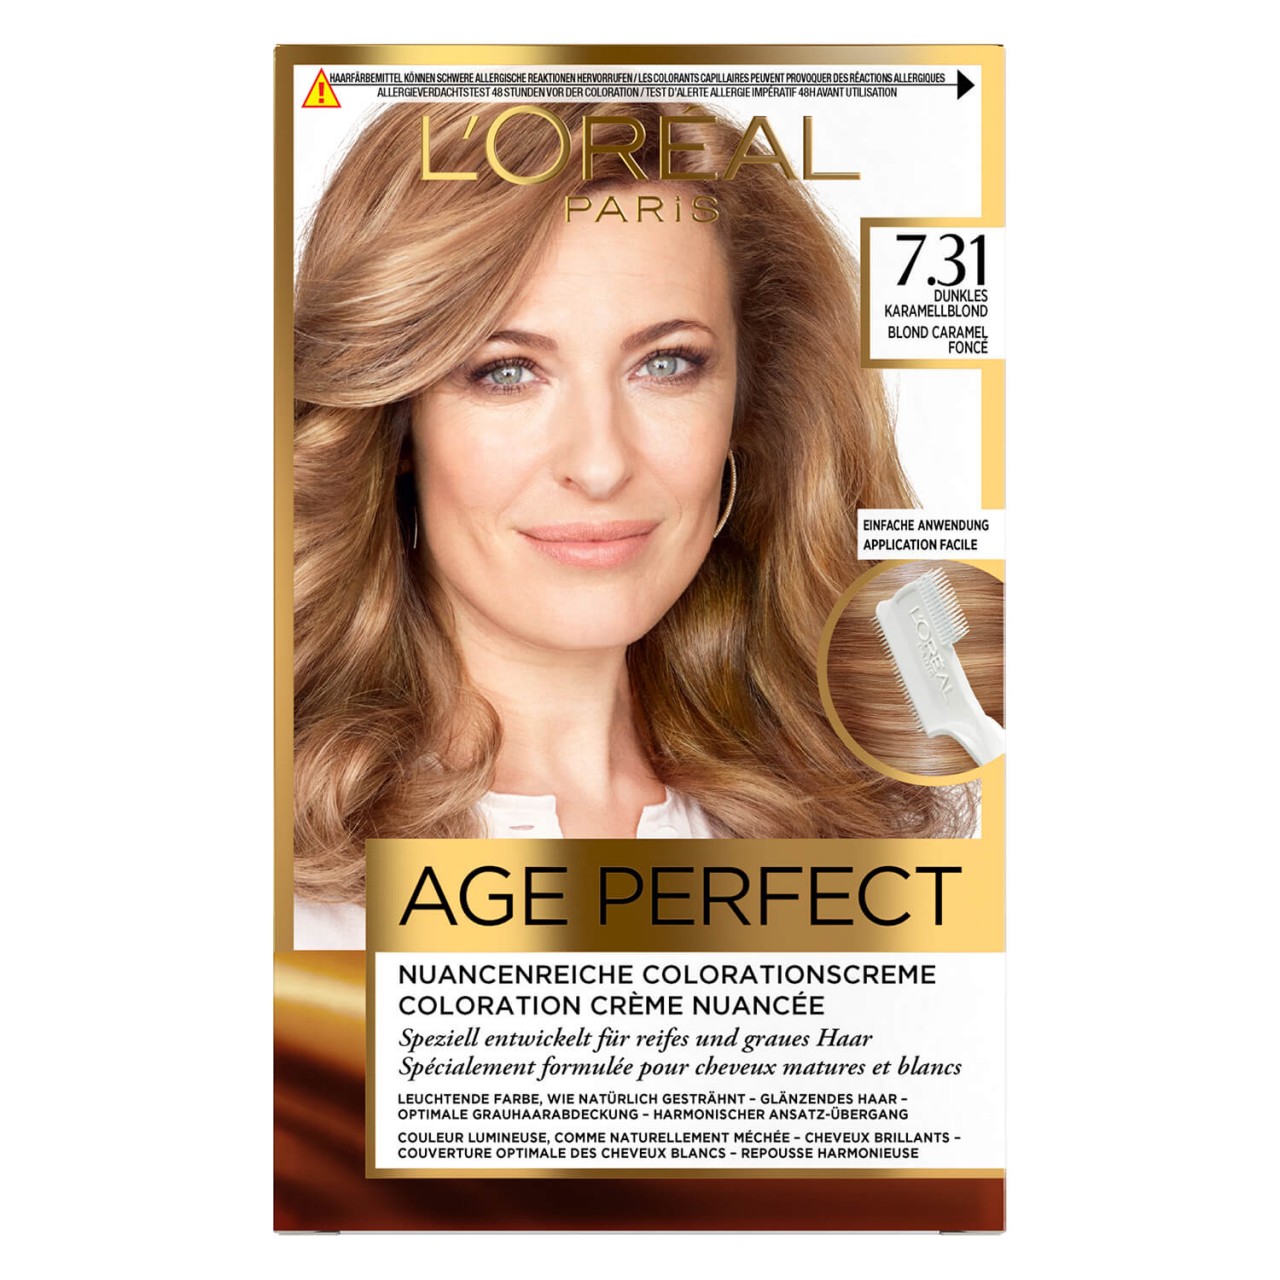 LOréal Age Perfect Color - 7.31 Dunkles Karamelblond von L'Oréal Paris